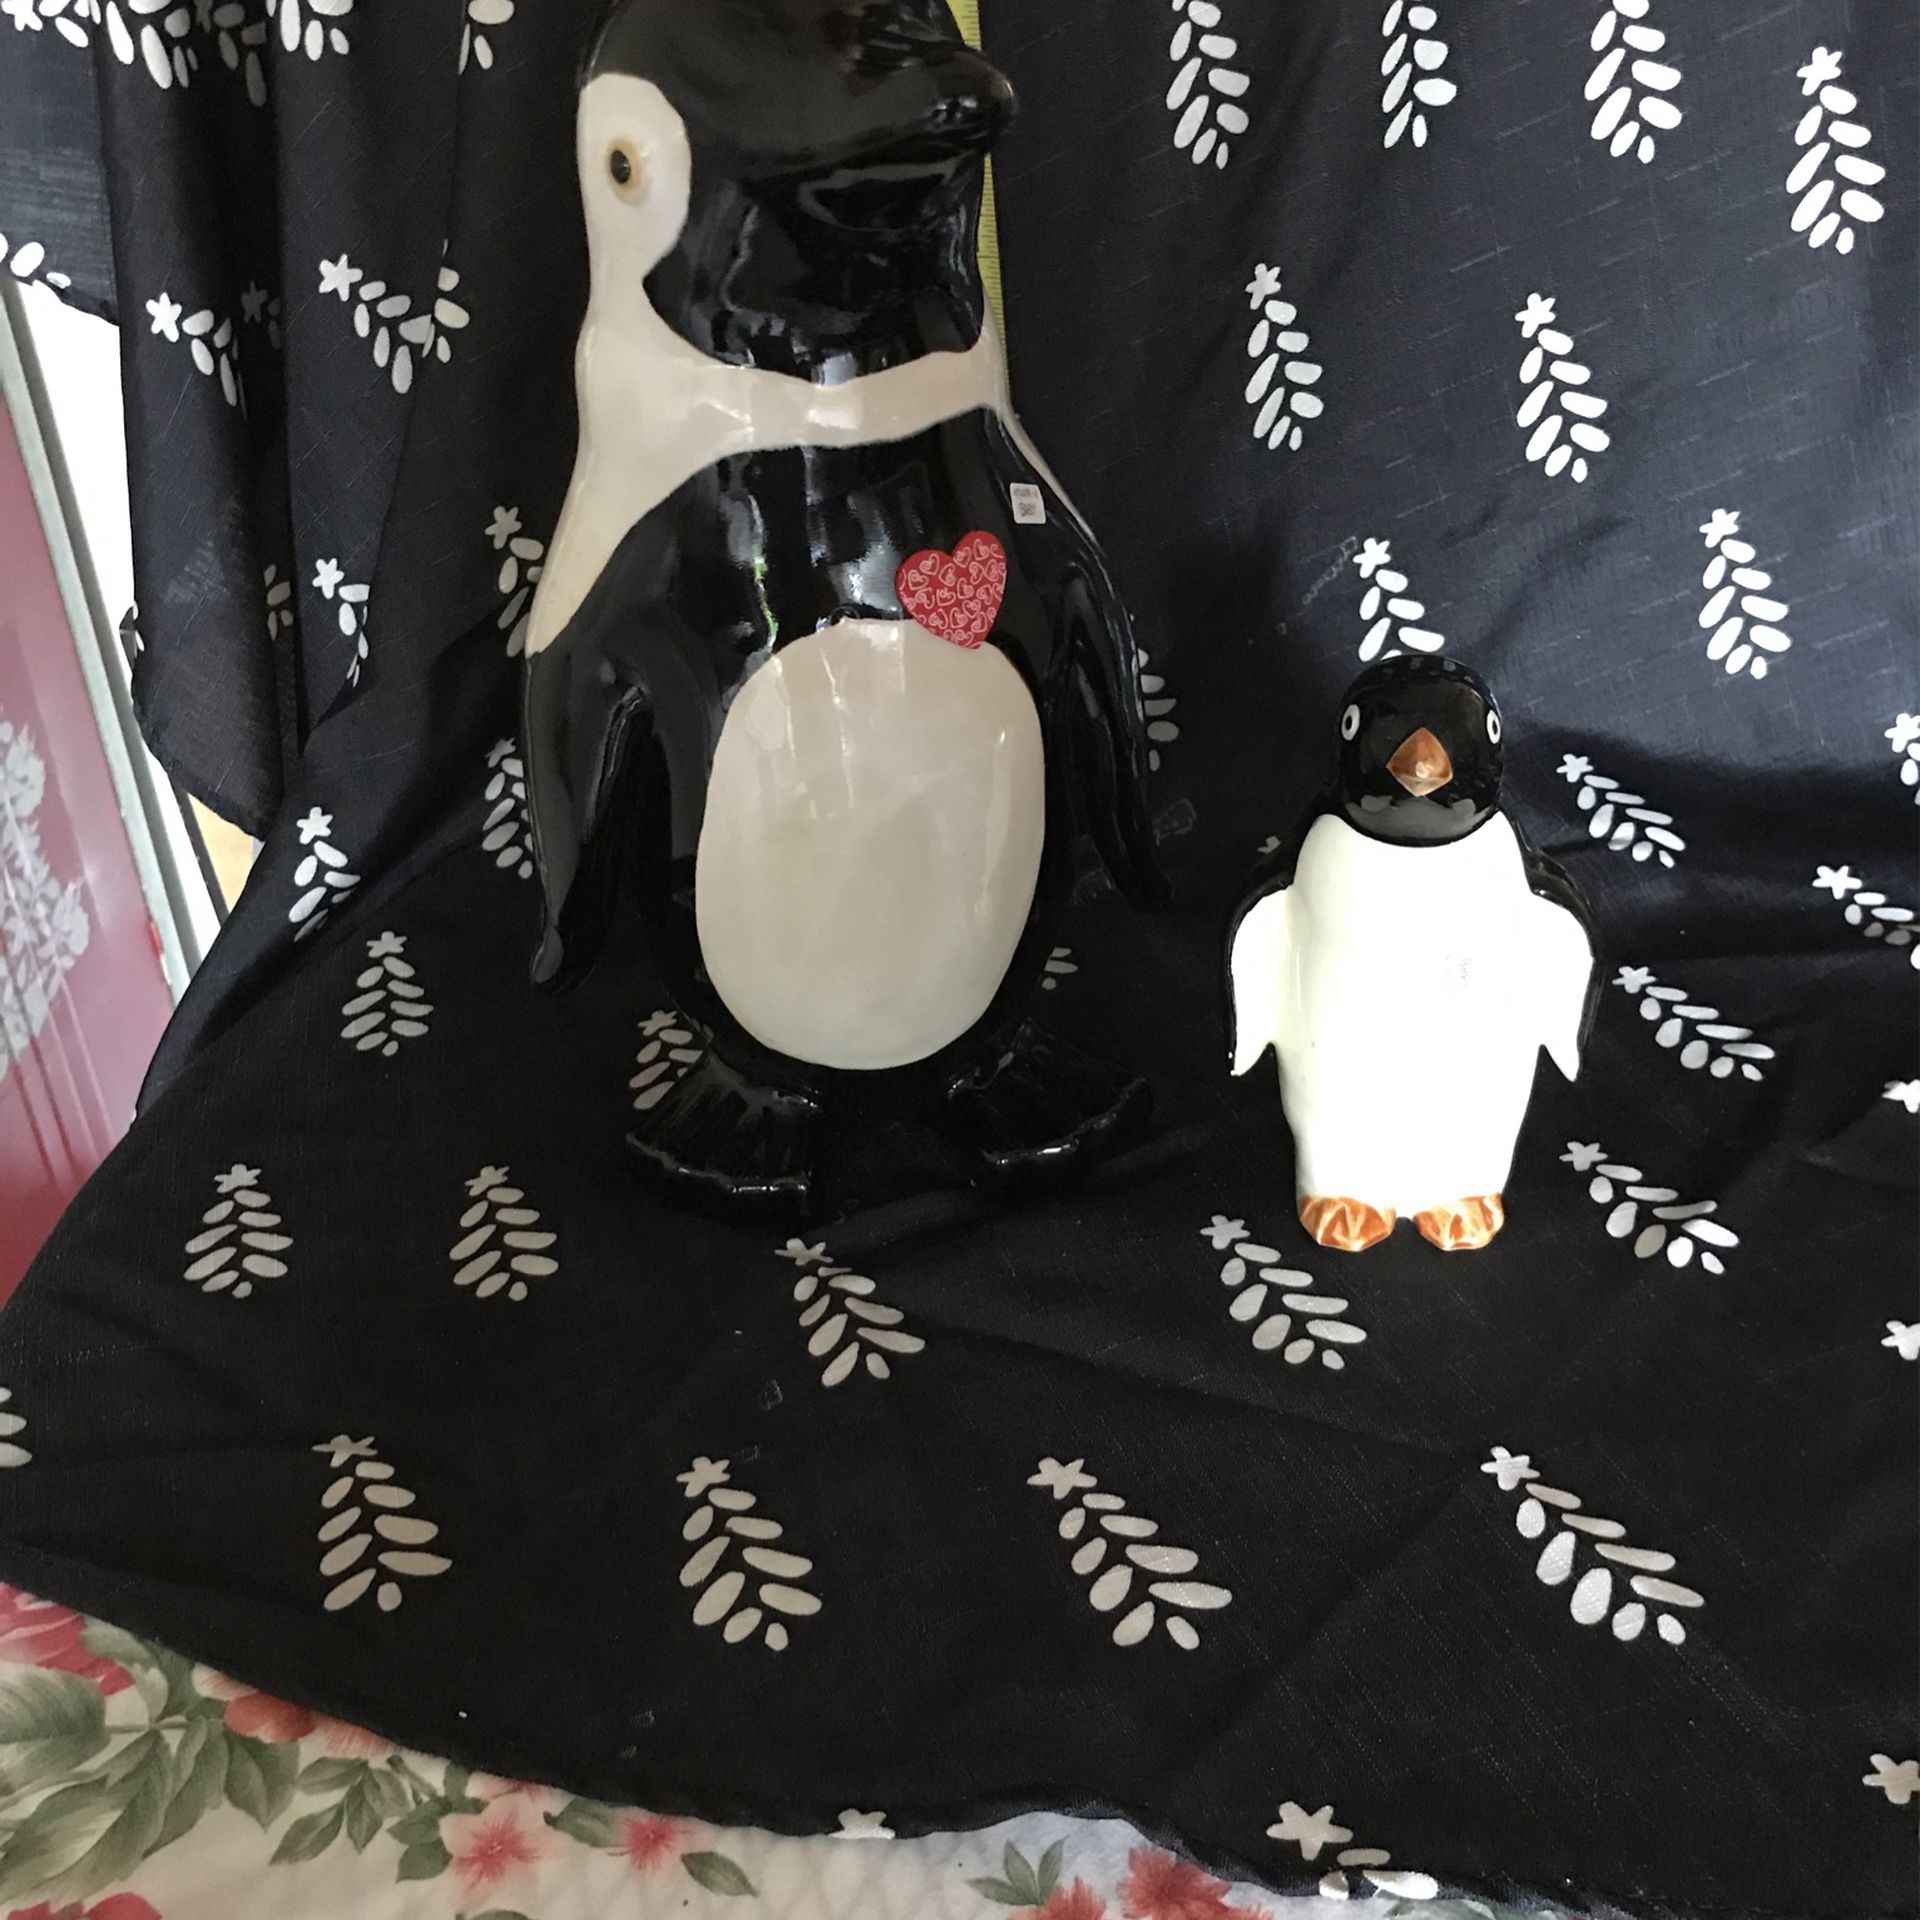 Penguins Ceramic